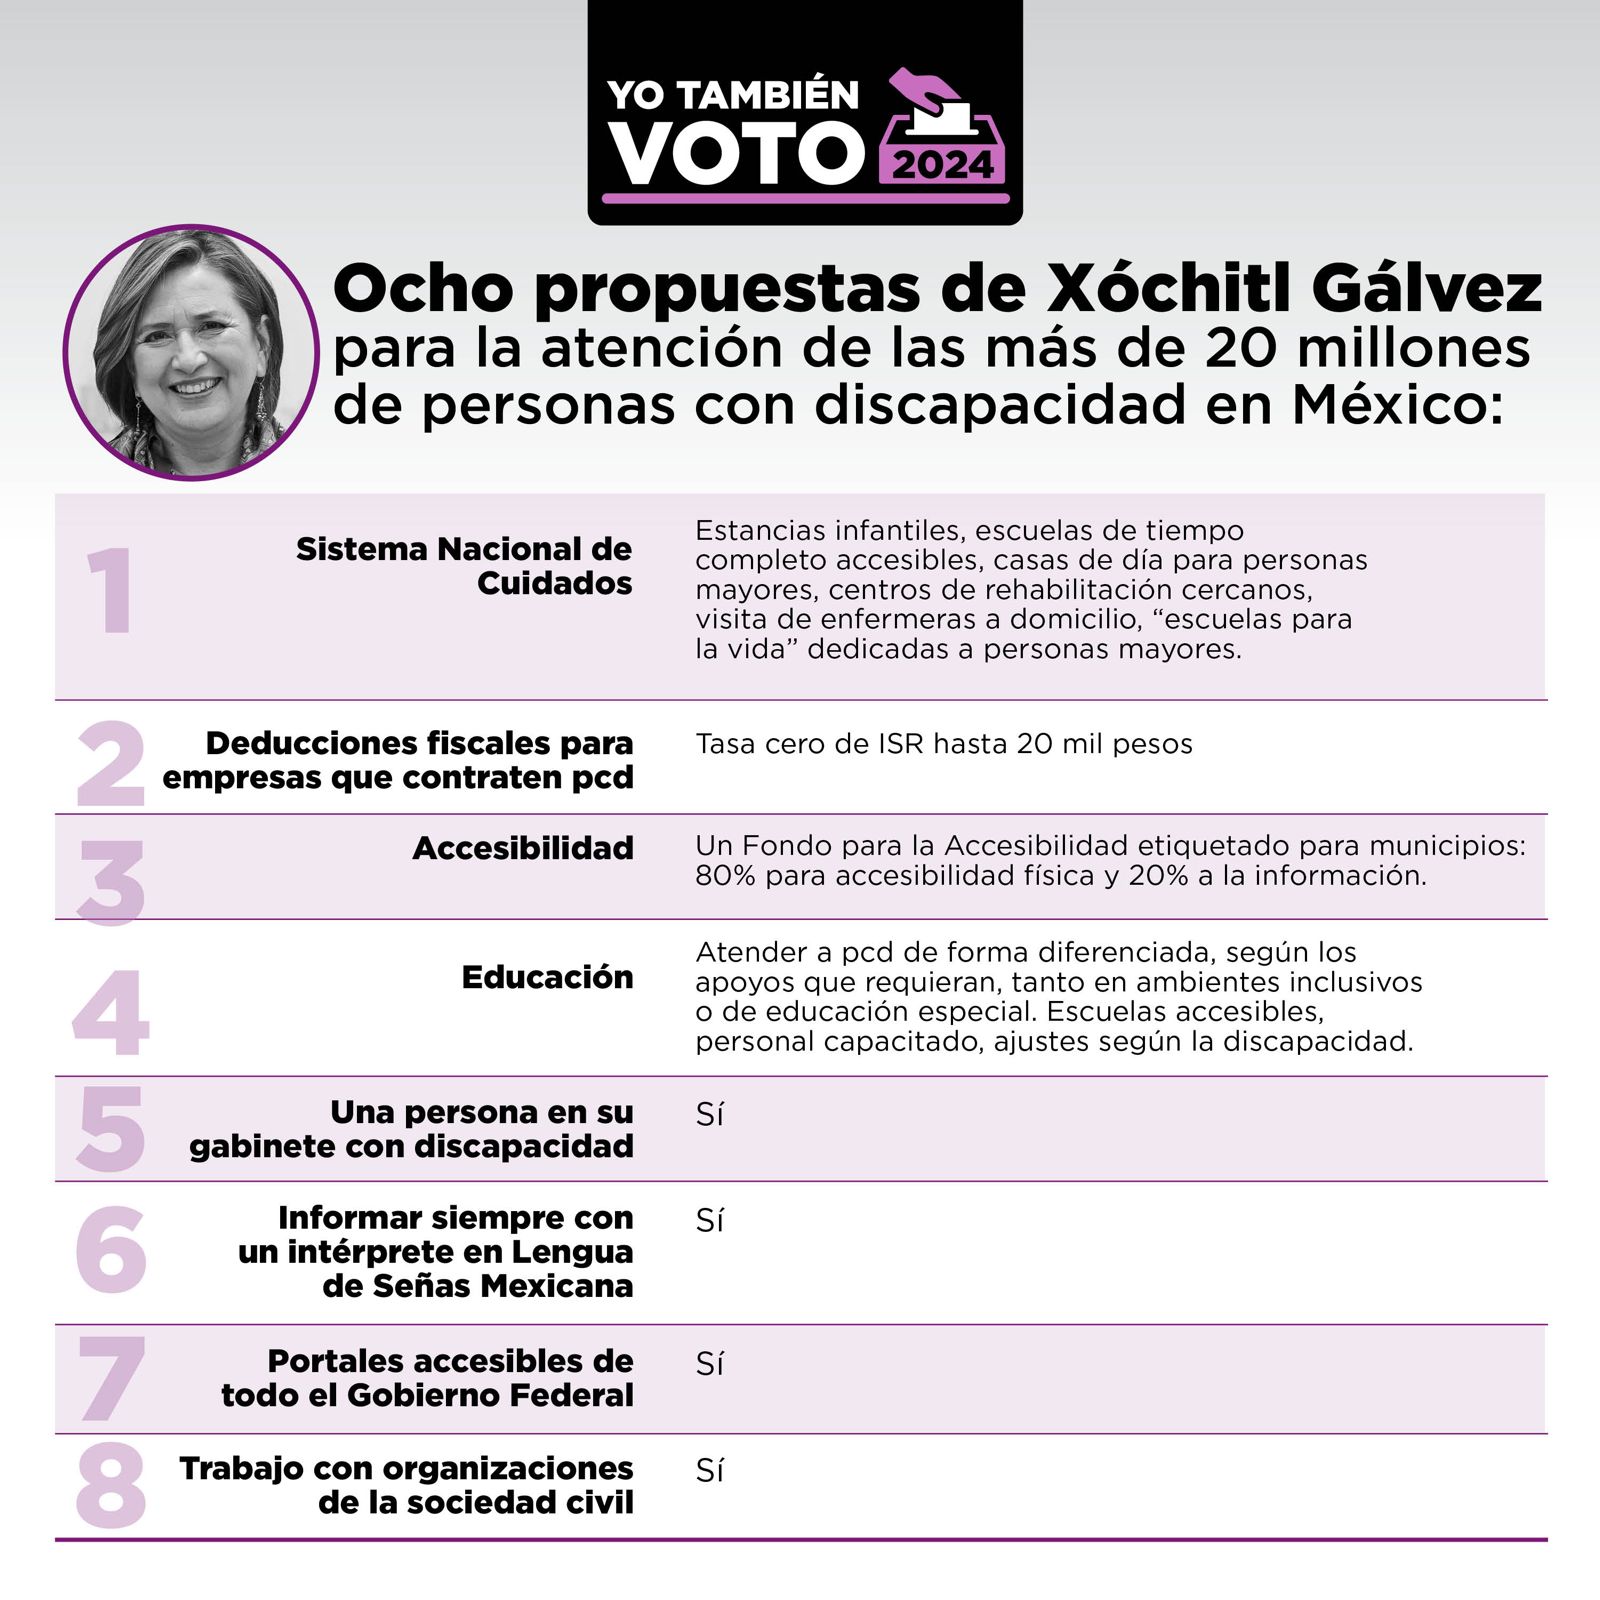 Ocho propuesta de Xóchitl Gálvez para la atención de las más de 20 millones de personas con discapacidad en México.